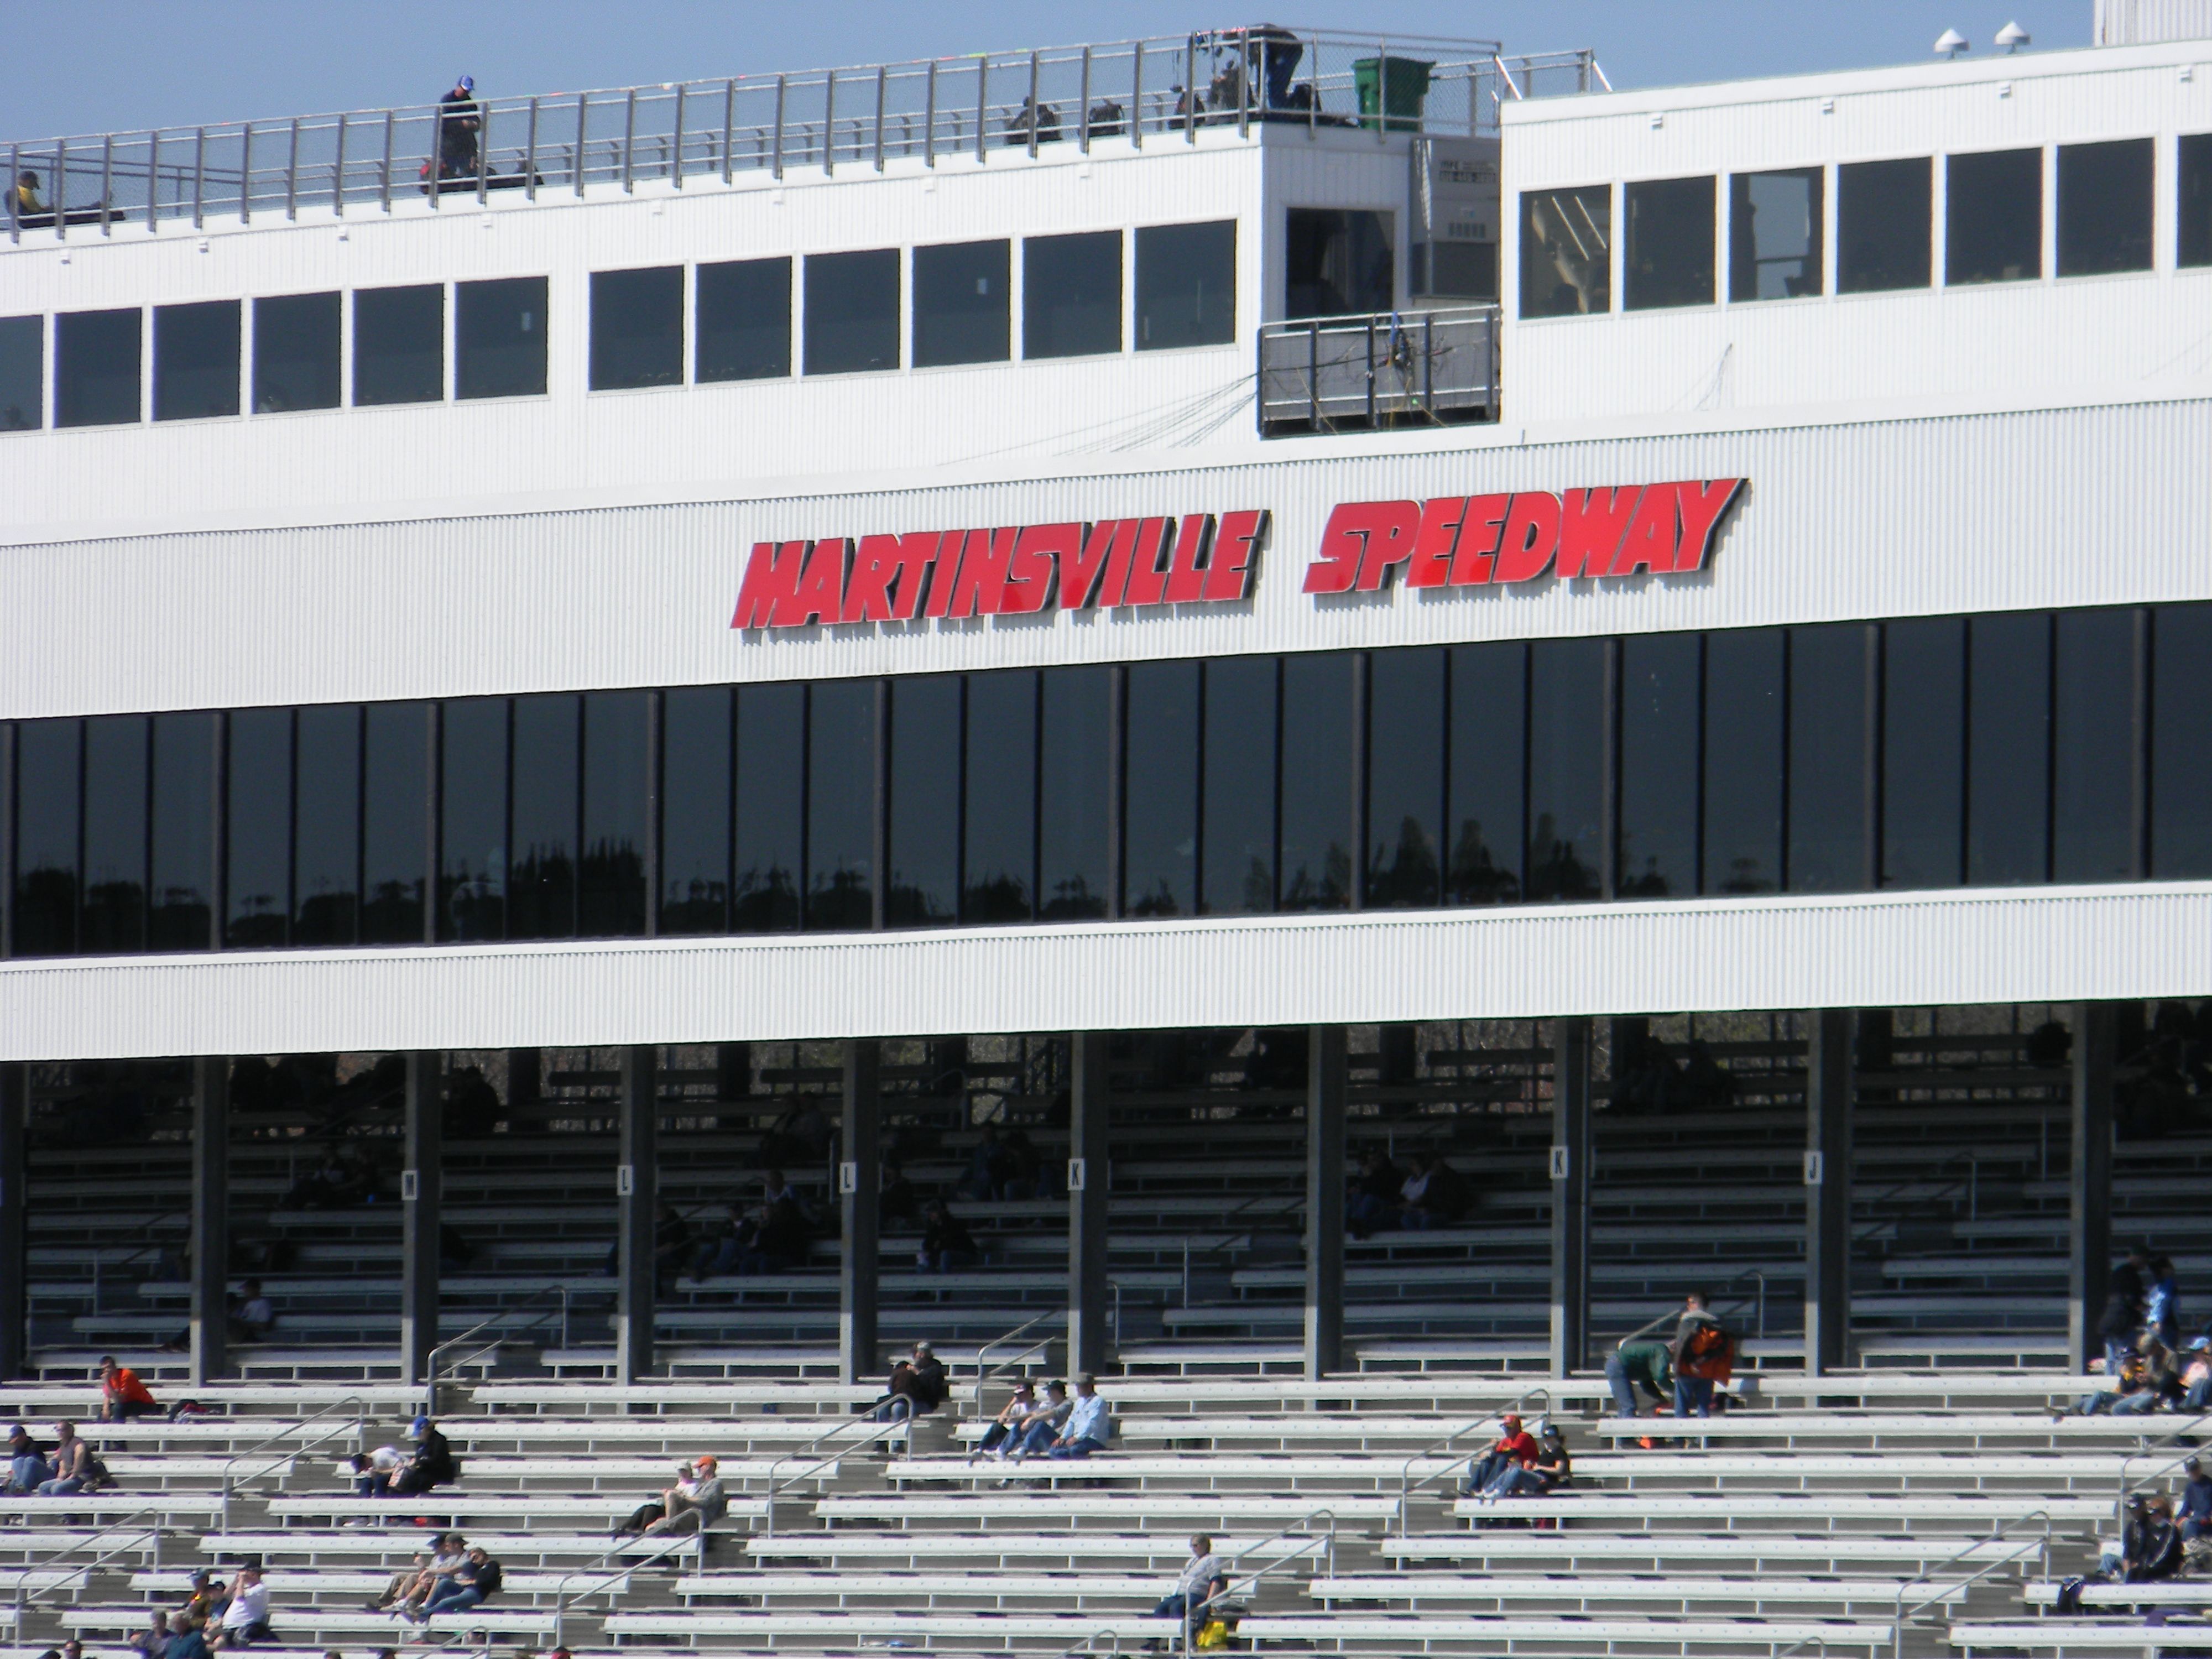 Martinsville Speedway tower in